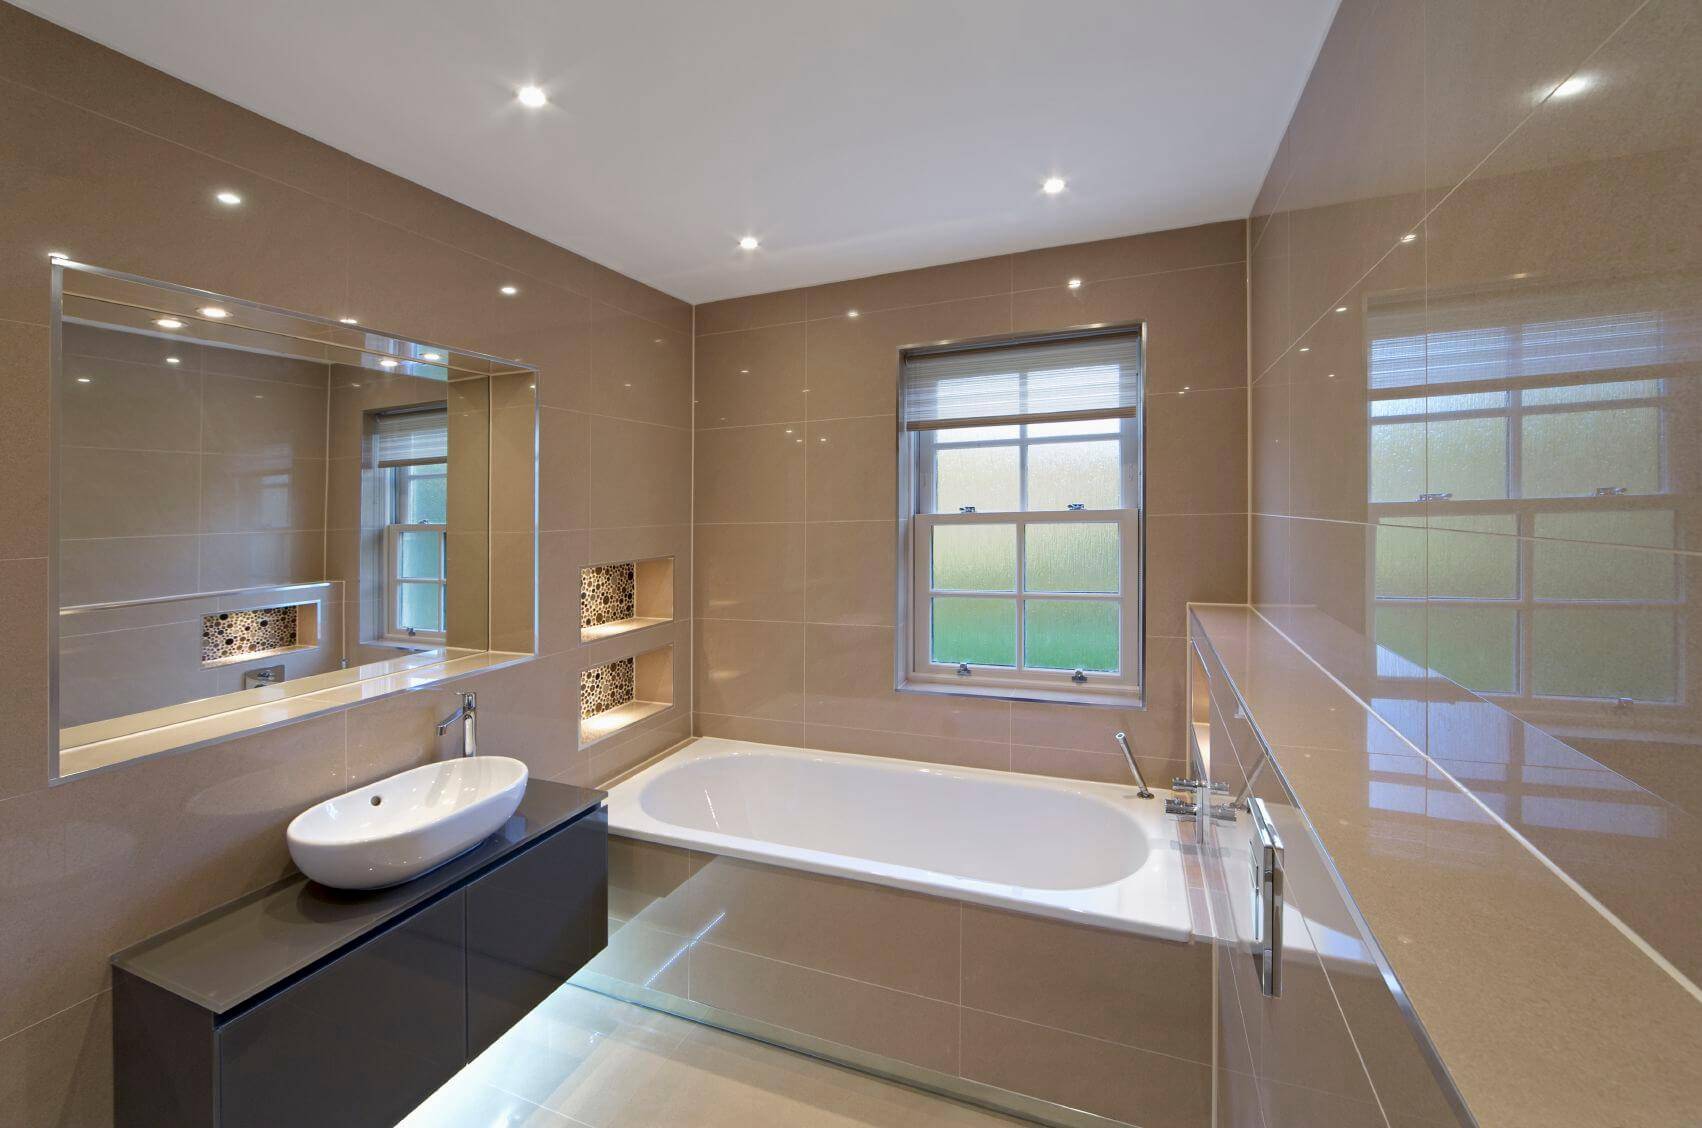 Какие потолки лучше сделать в ванной комнате? 5 вариантов